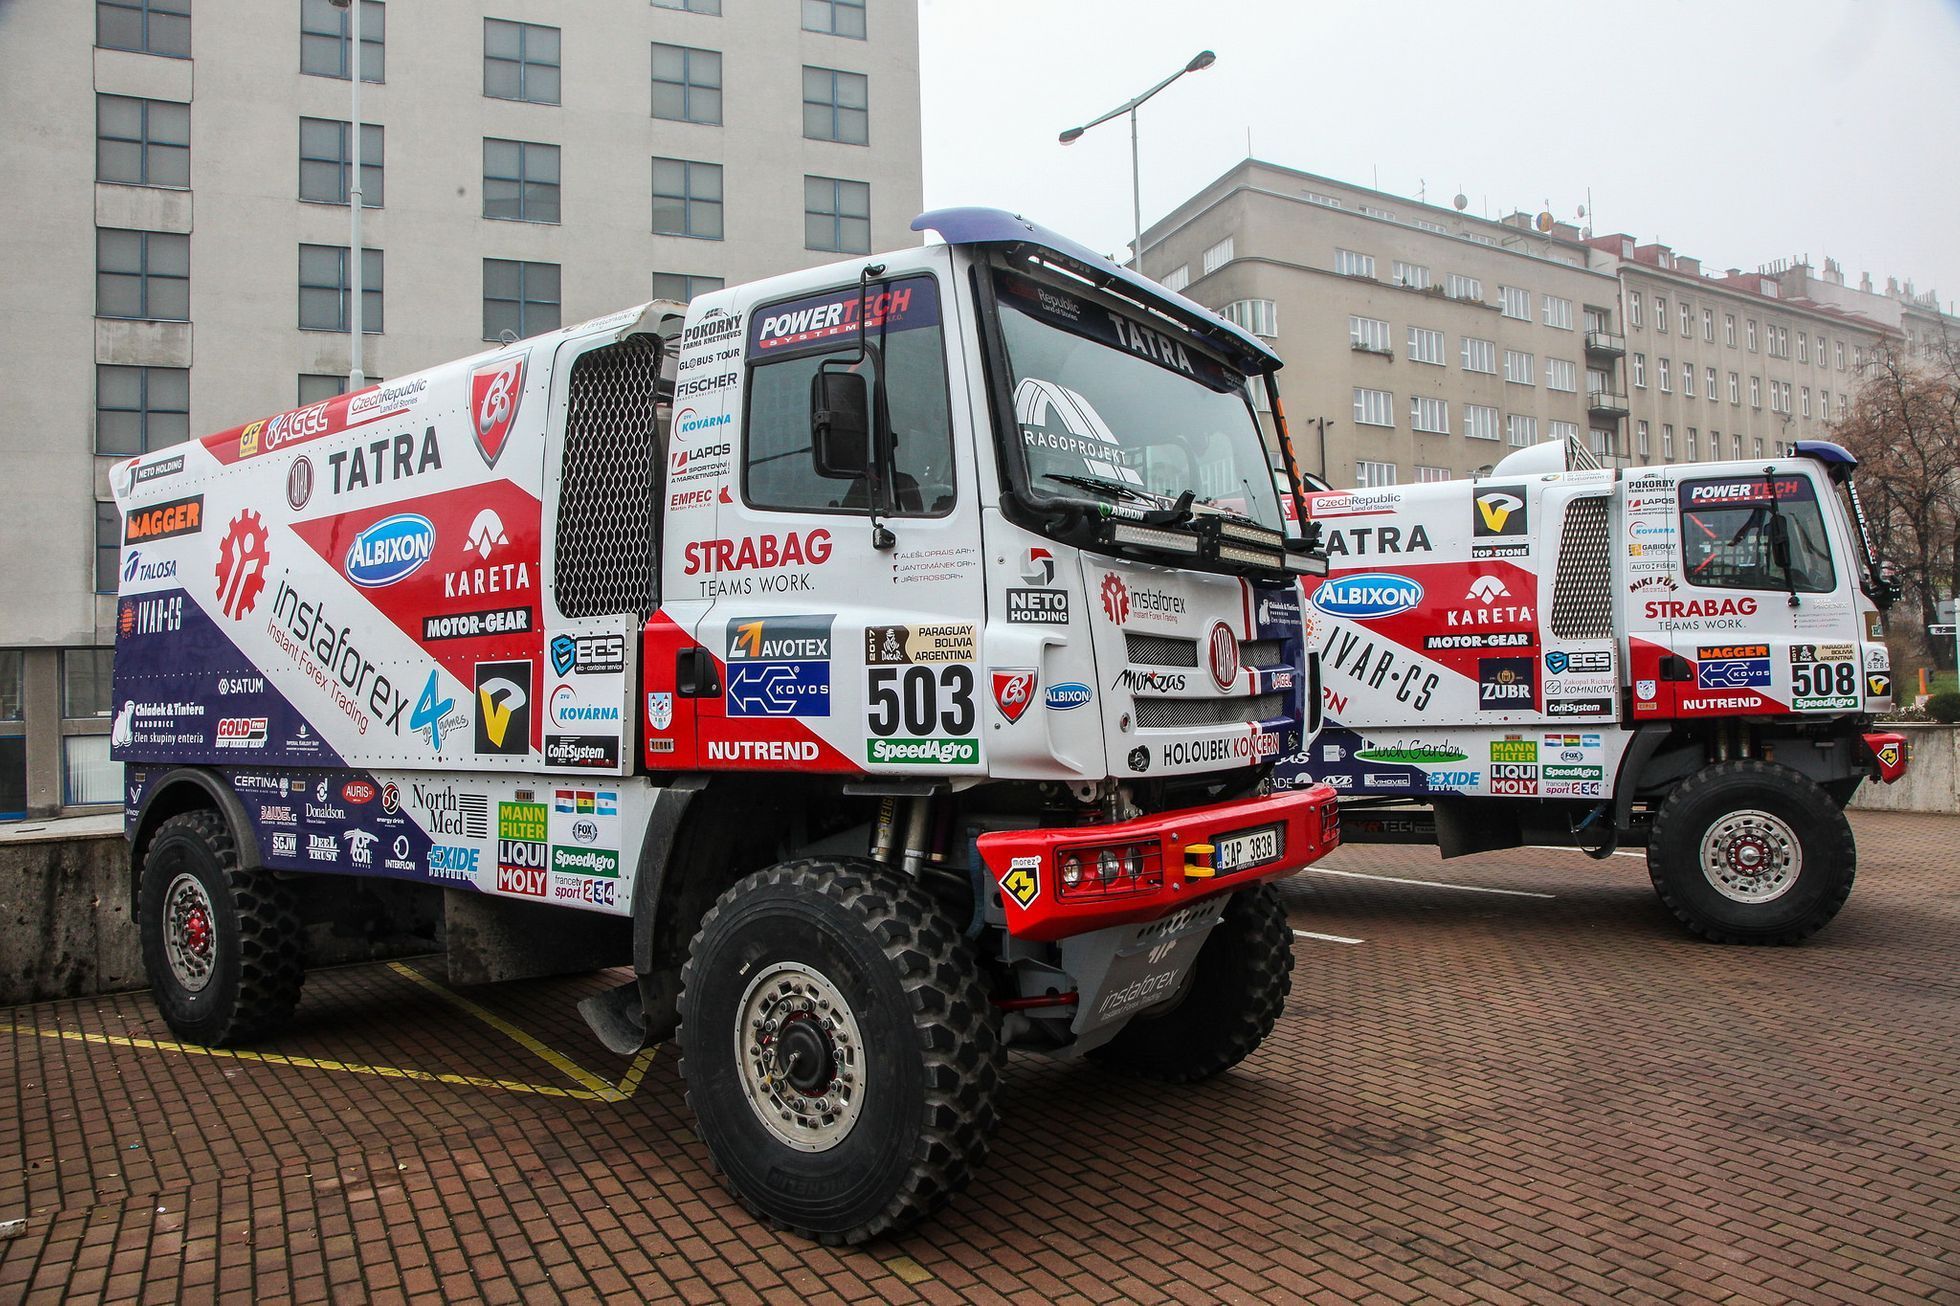 Rallye Dakar 2017: Tatra Phoenix